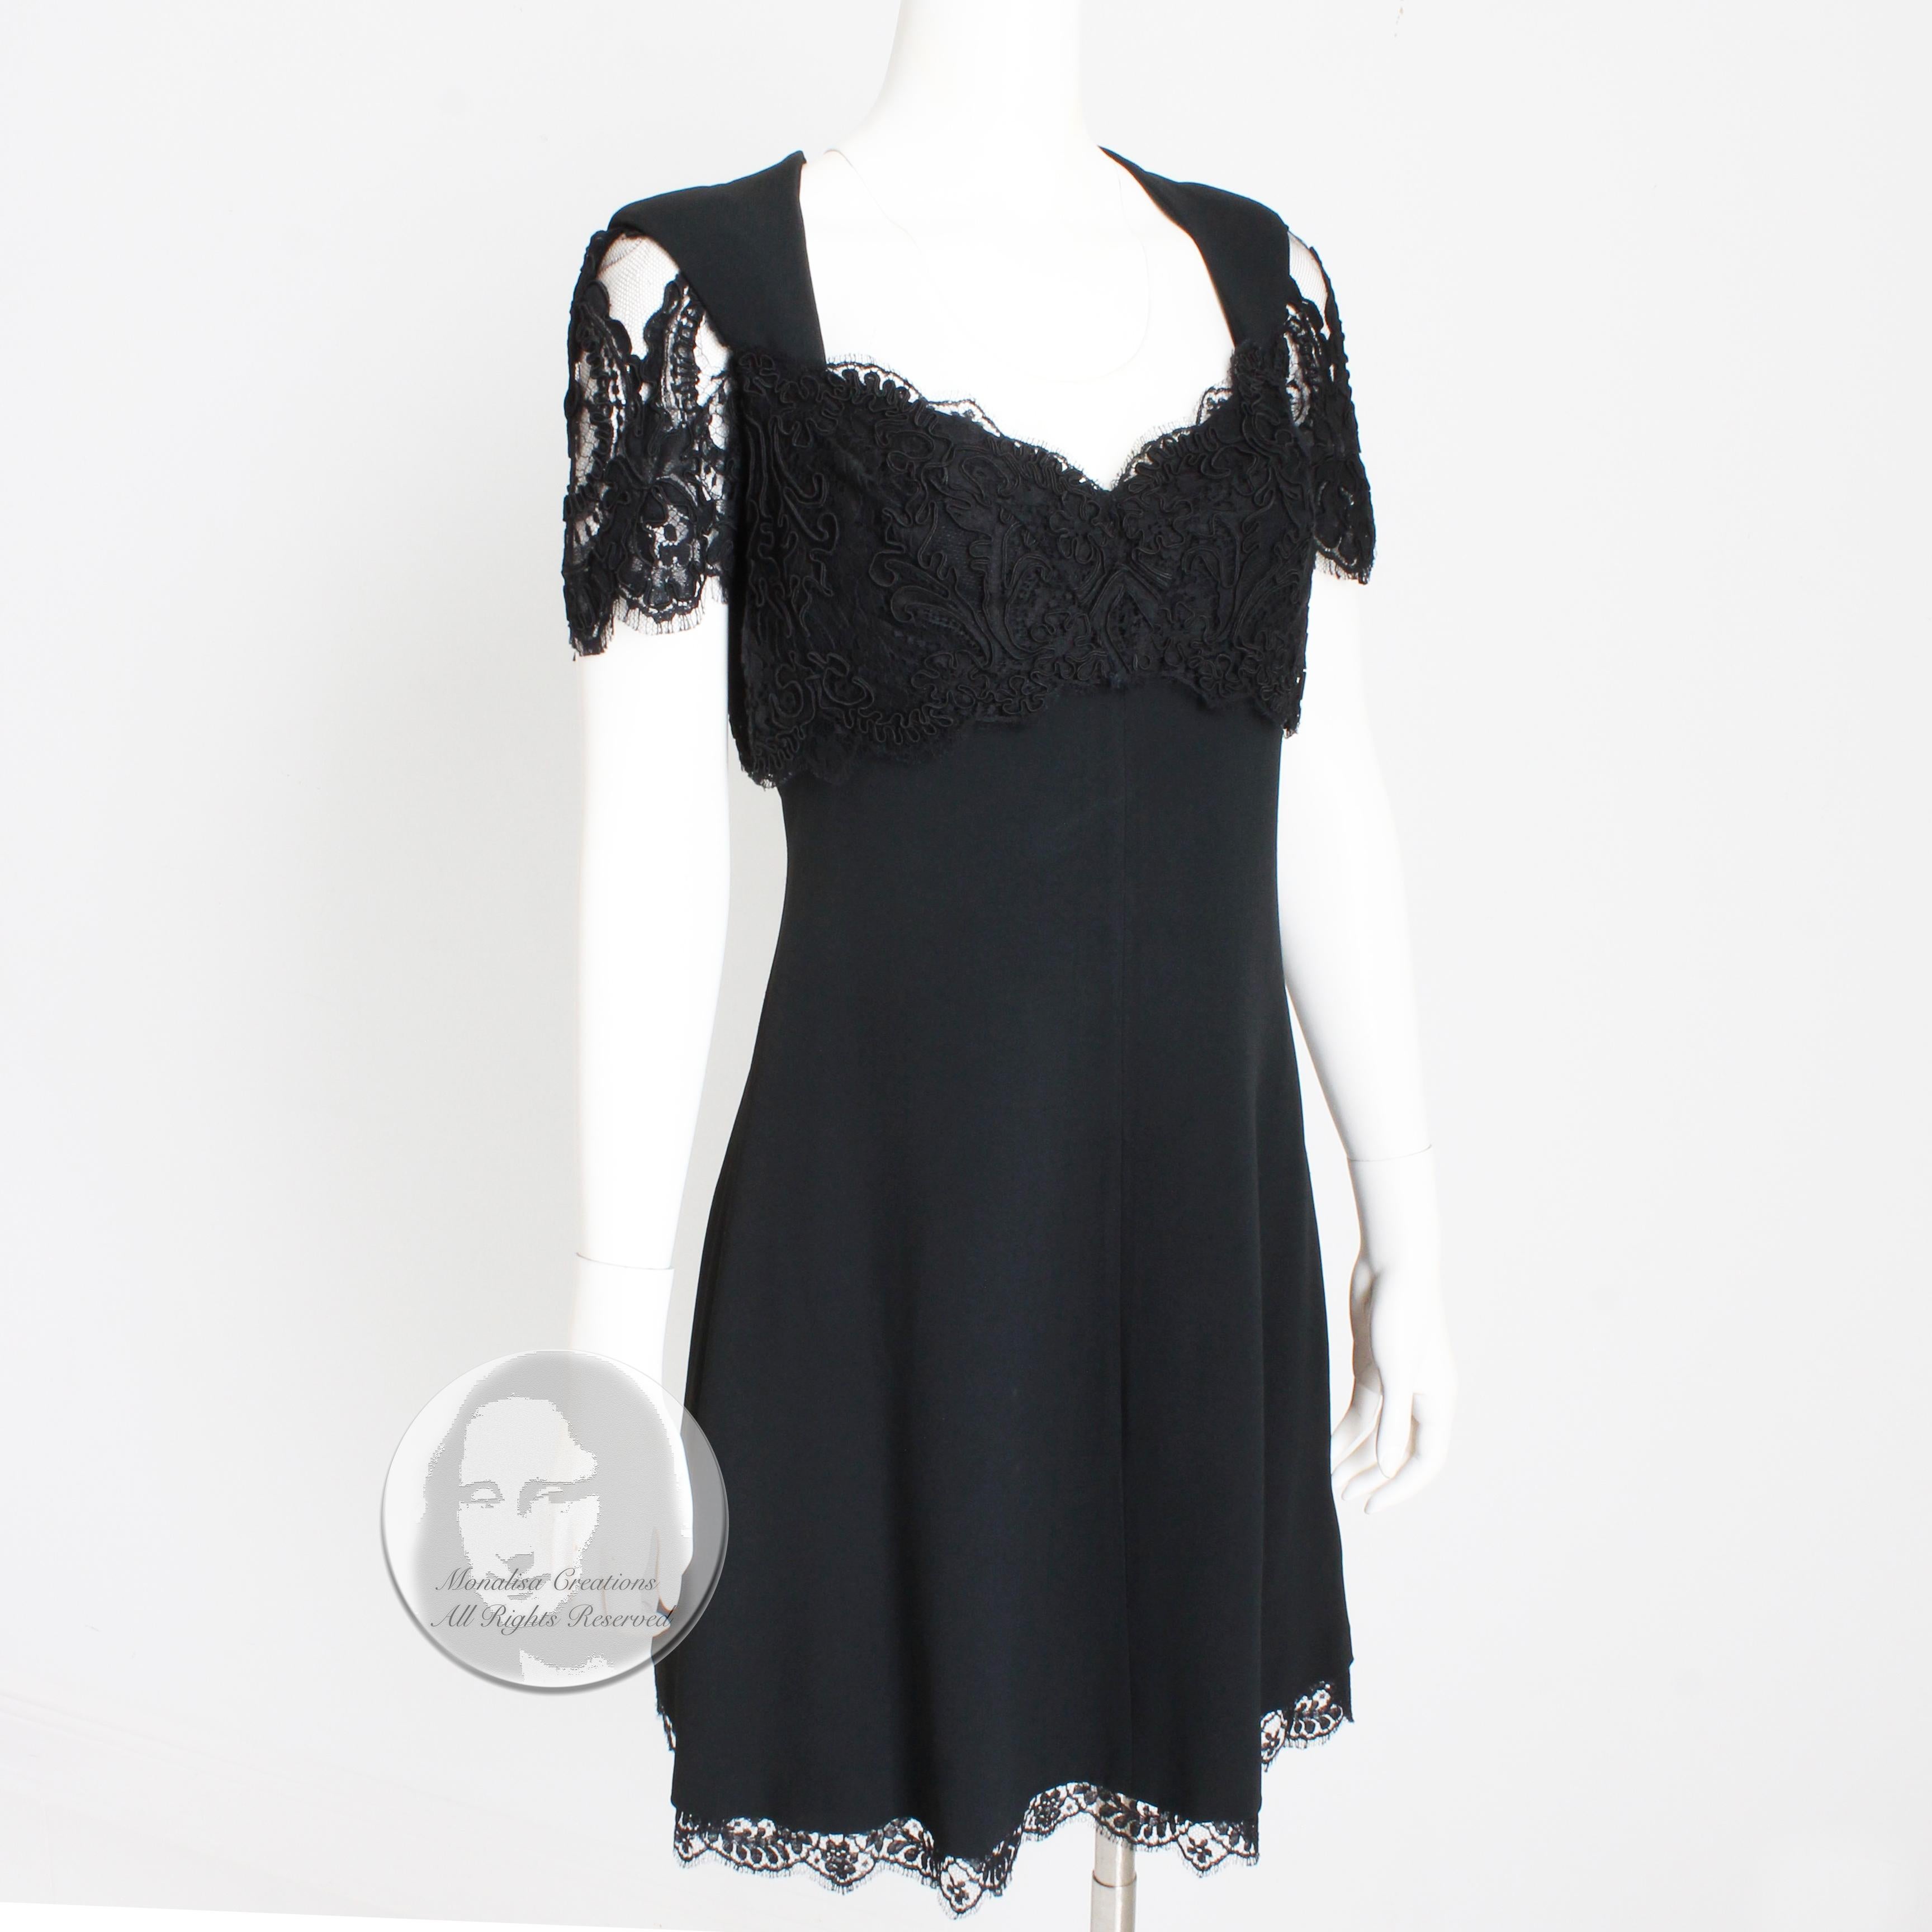 Women's or Men's Louis Feraud Dress Black Lace Cocktail Little Black Dress Evening Party Vintage 